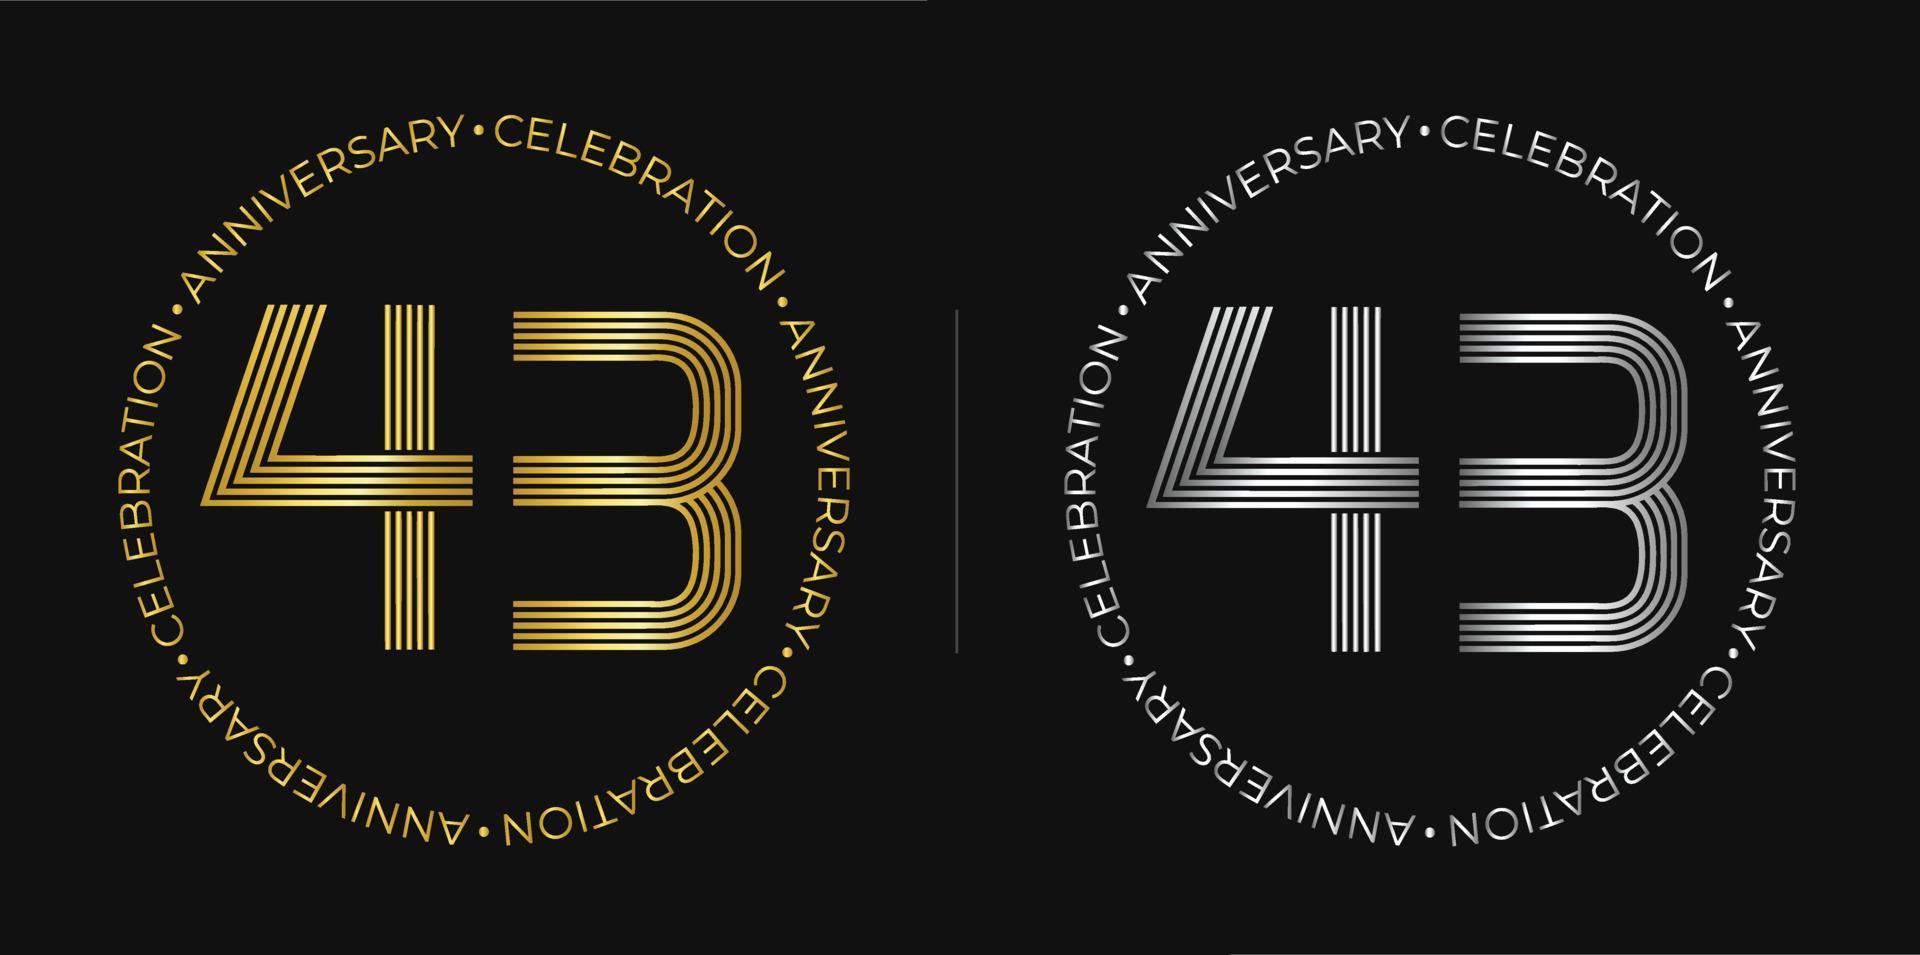 43e anniversaire. bannière de célébration d'anniversaire de quarante-trois ans aux couleurs dorées et argentées. logo circulaire avec un design original de chiffres aux lignes élégantes. vecteur